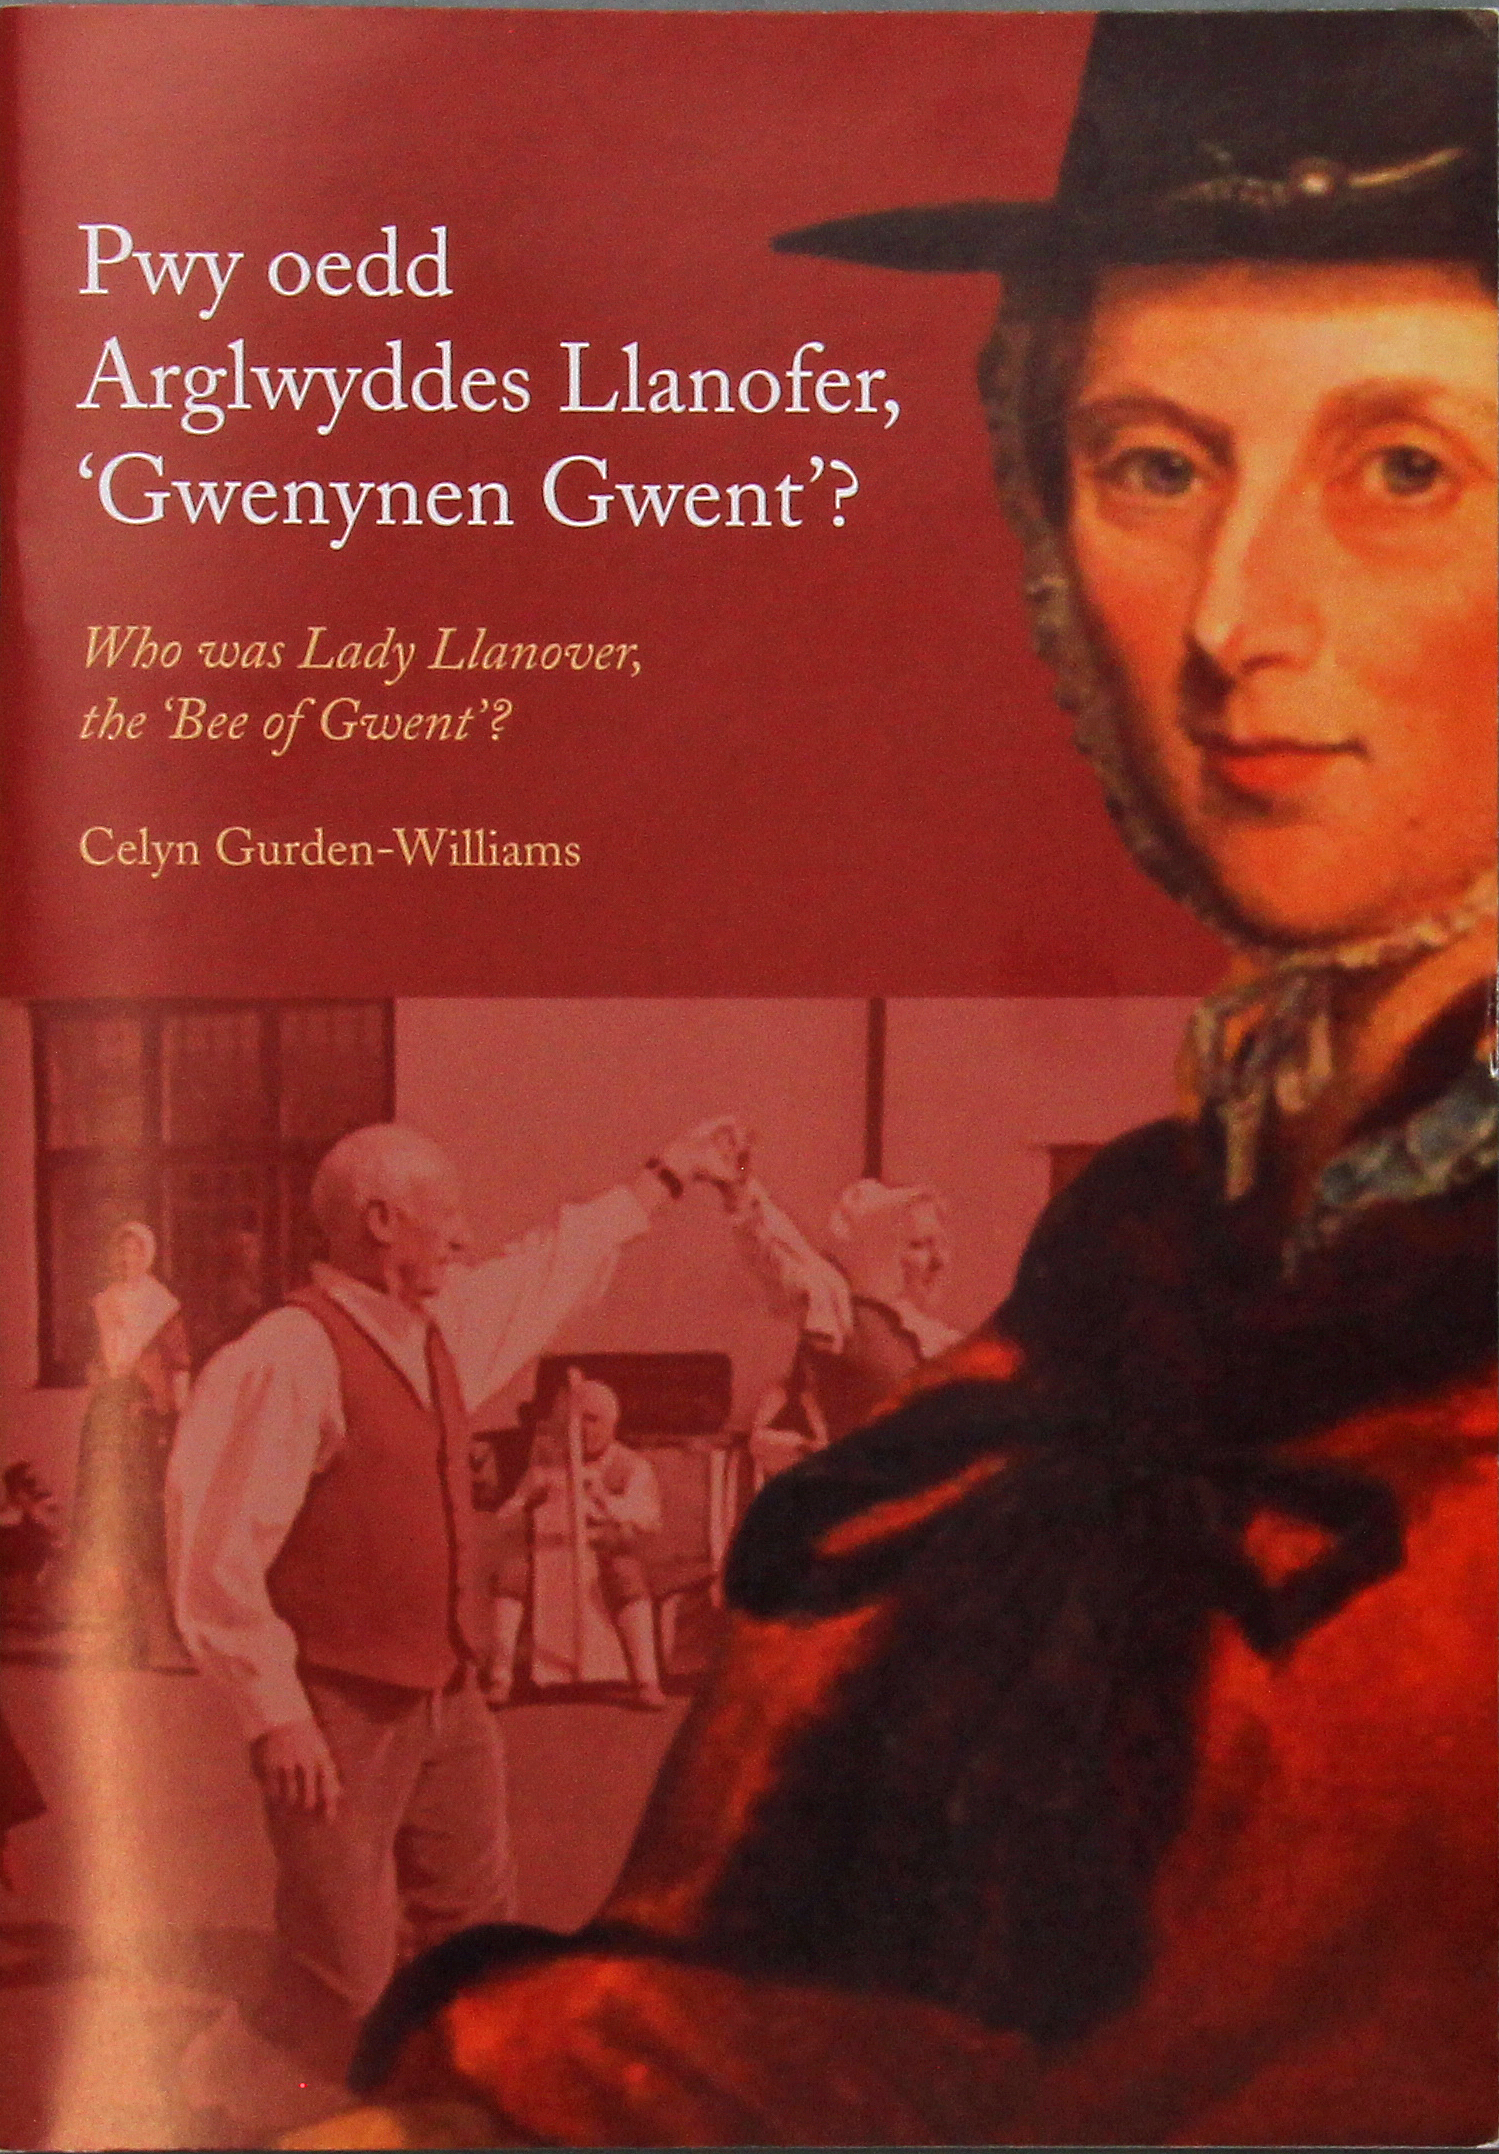 Pwy Oedd Arglwyddes Llanofer 'Gwenynen Gwent': Who Was Lady Llanover, the 'Bee of Gwent', Celyn Gurden-Williams, 2016, £5.00